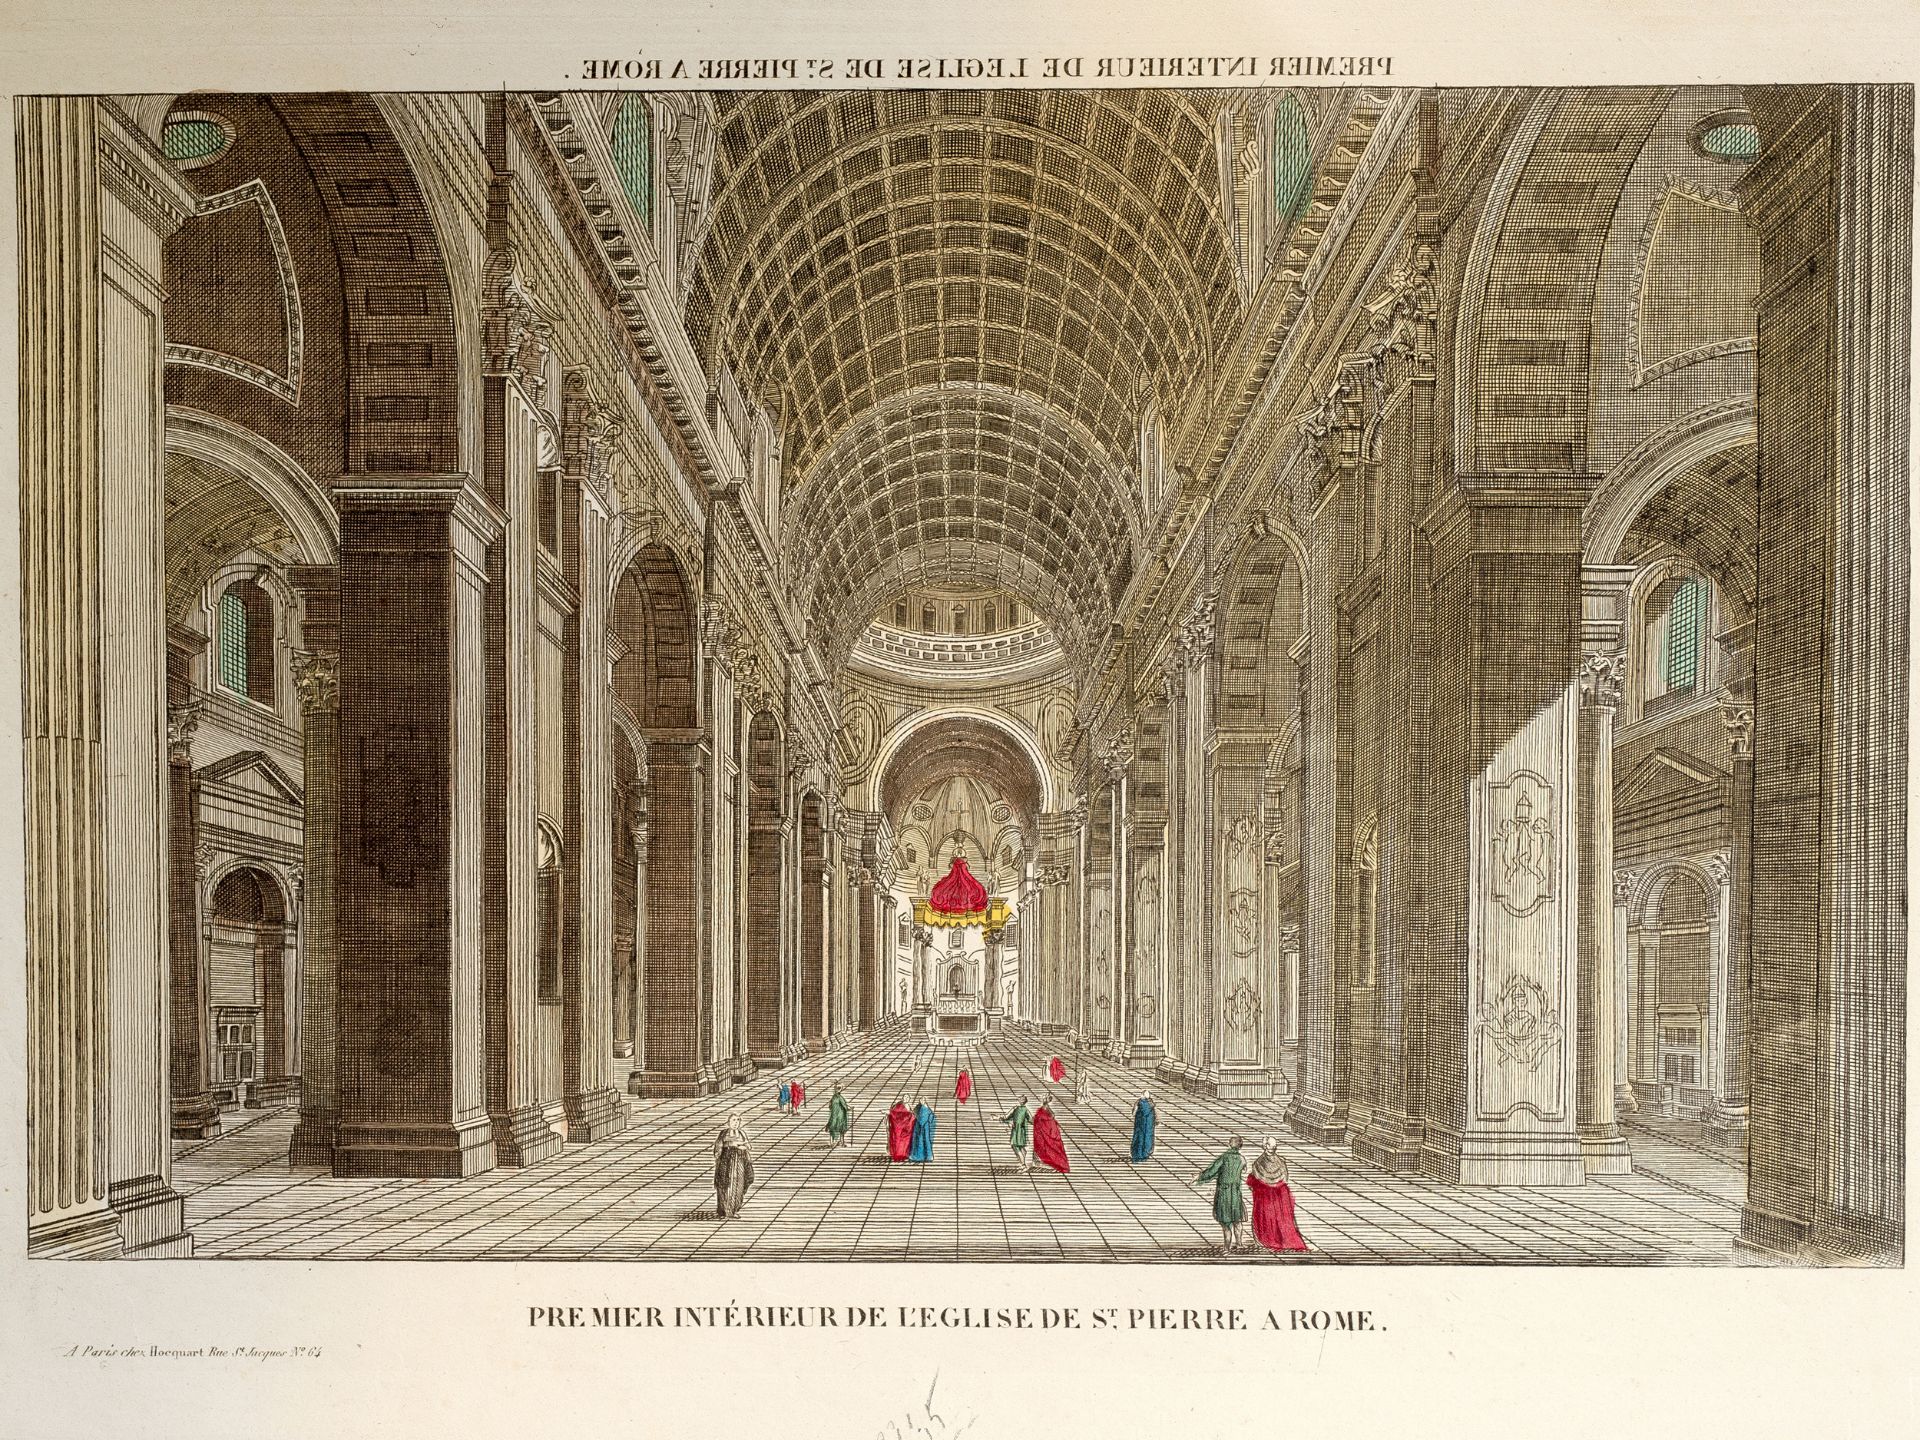 Premier intérieur de l'eglise de S. Pierre a Rome